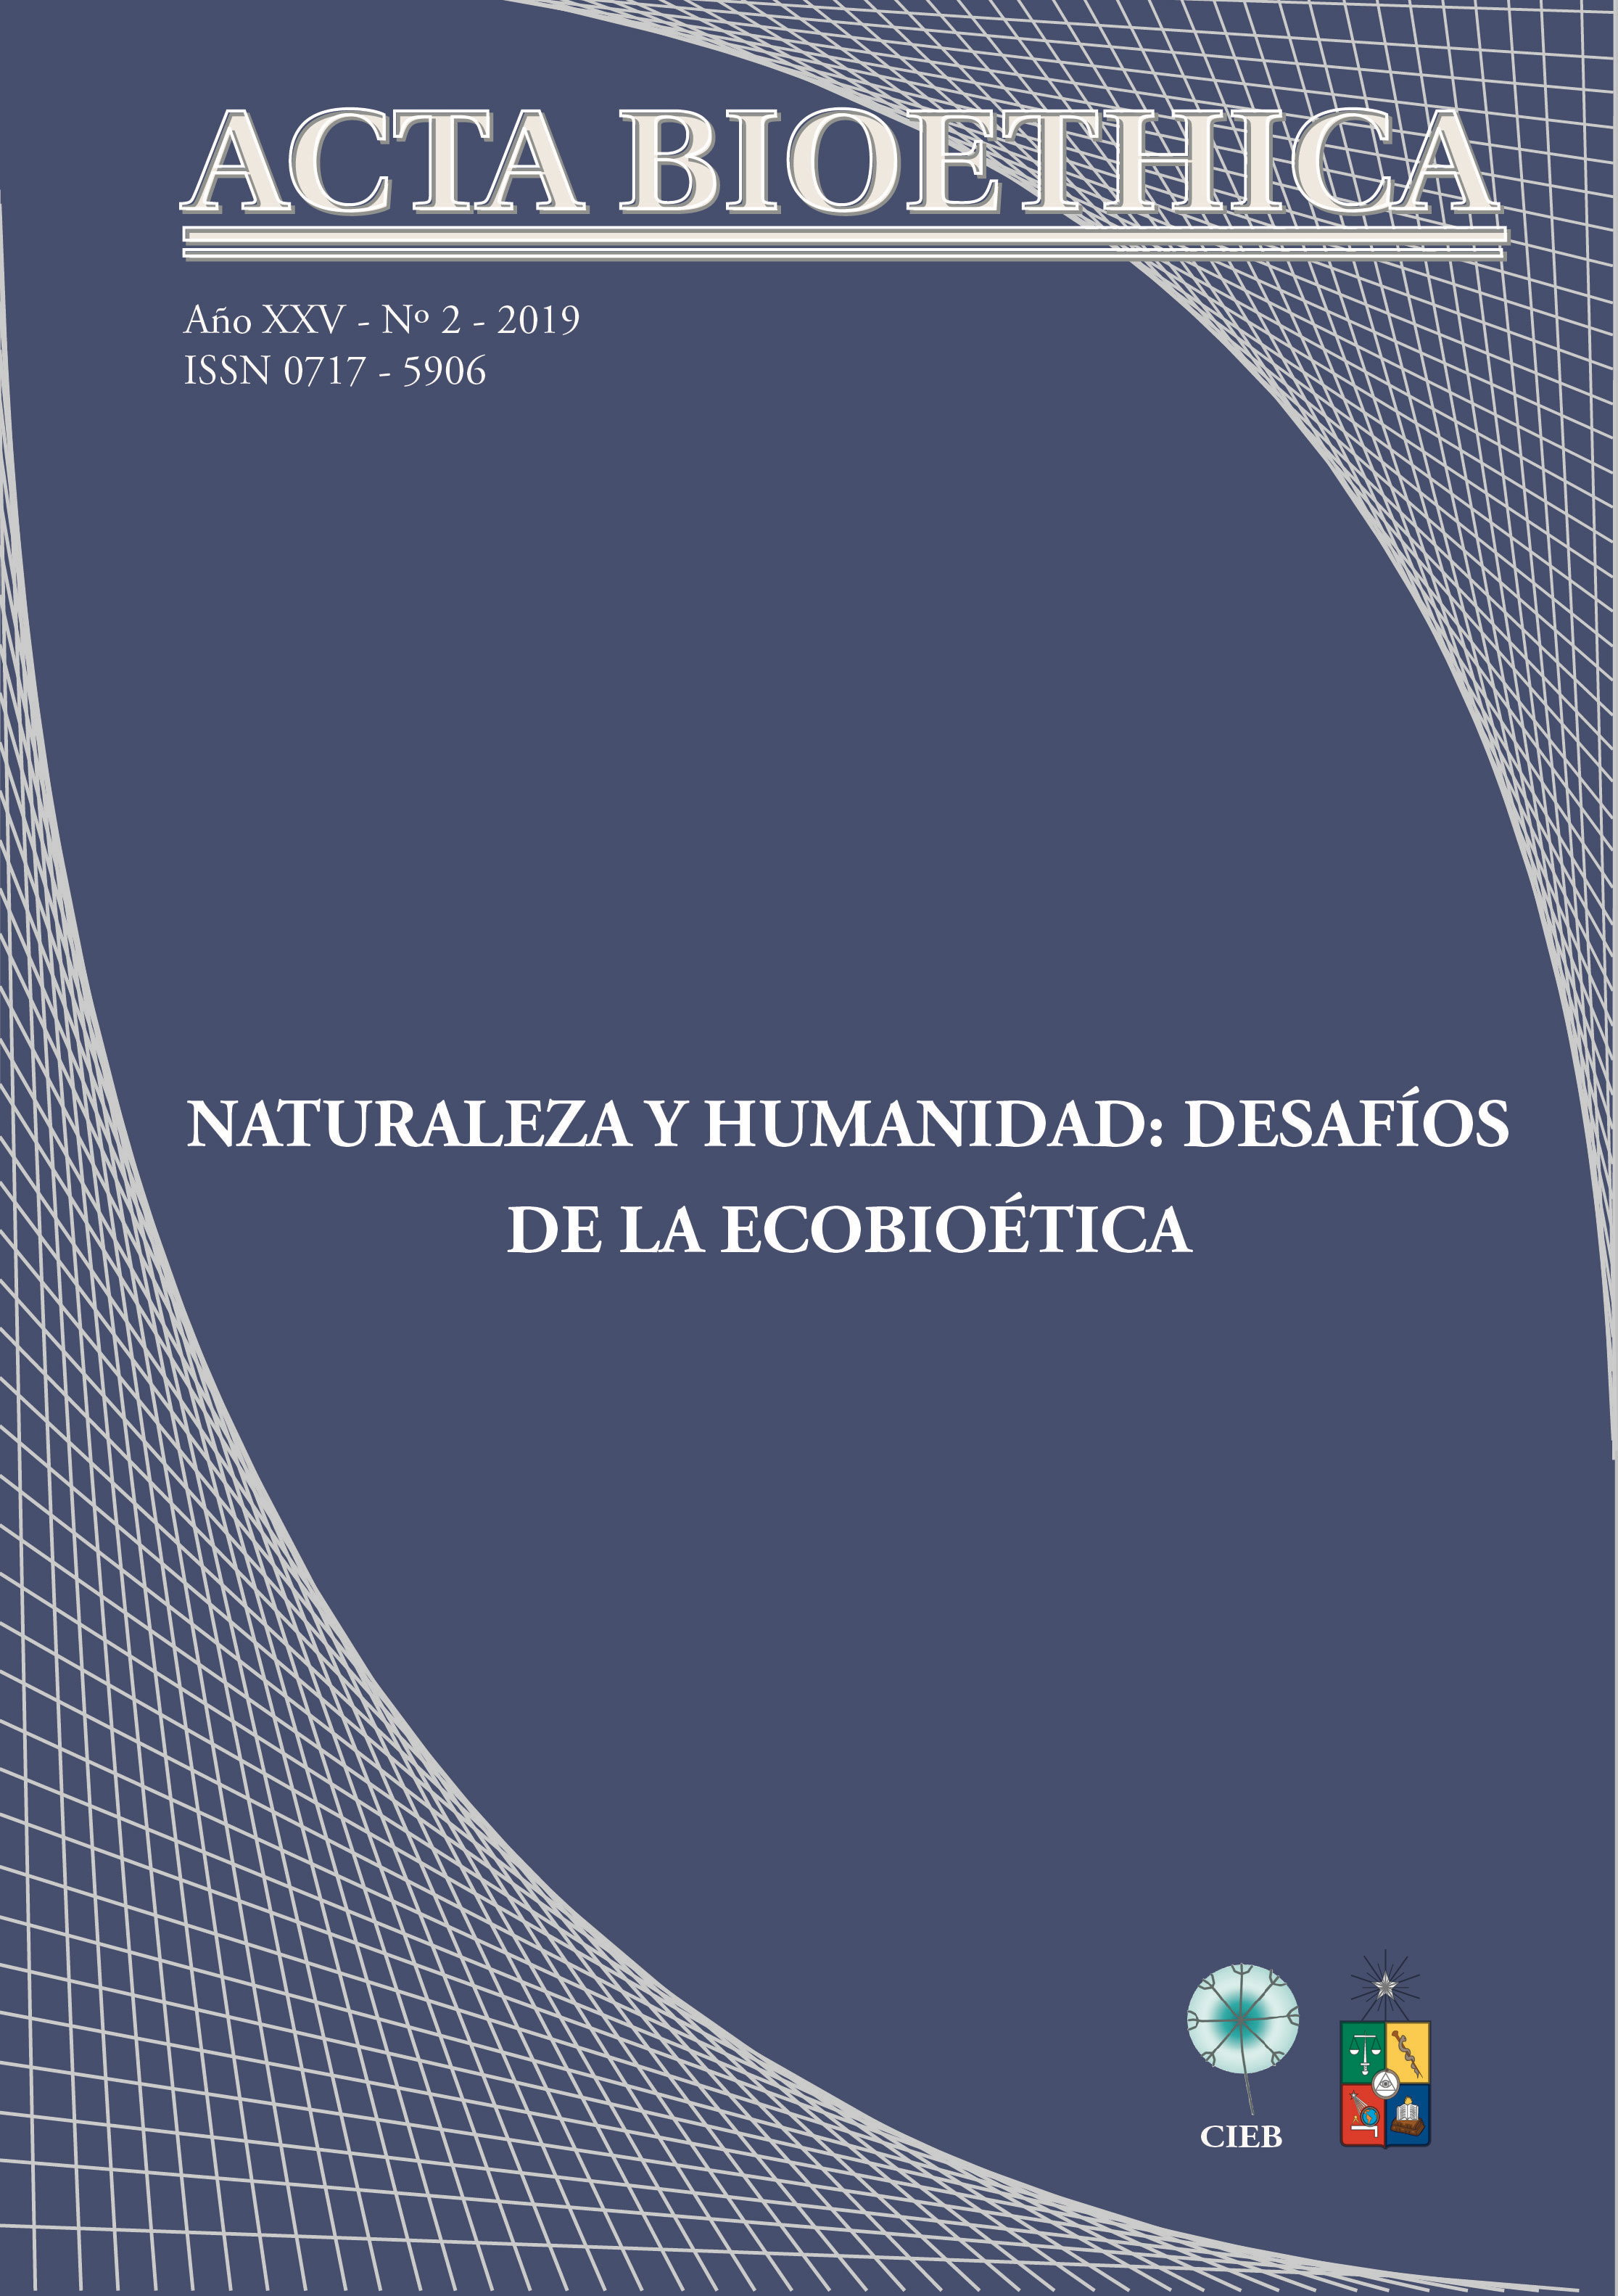 							Ver Vol. 25 Núm. 2 (2019): Naturaleza y humanidad: desafíos de la ecobioética
						